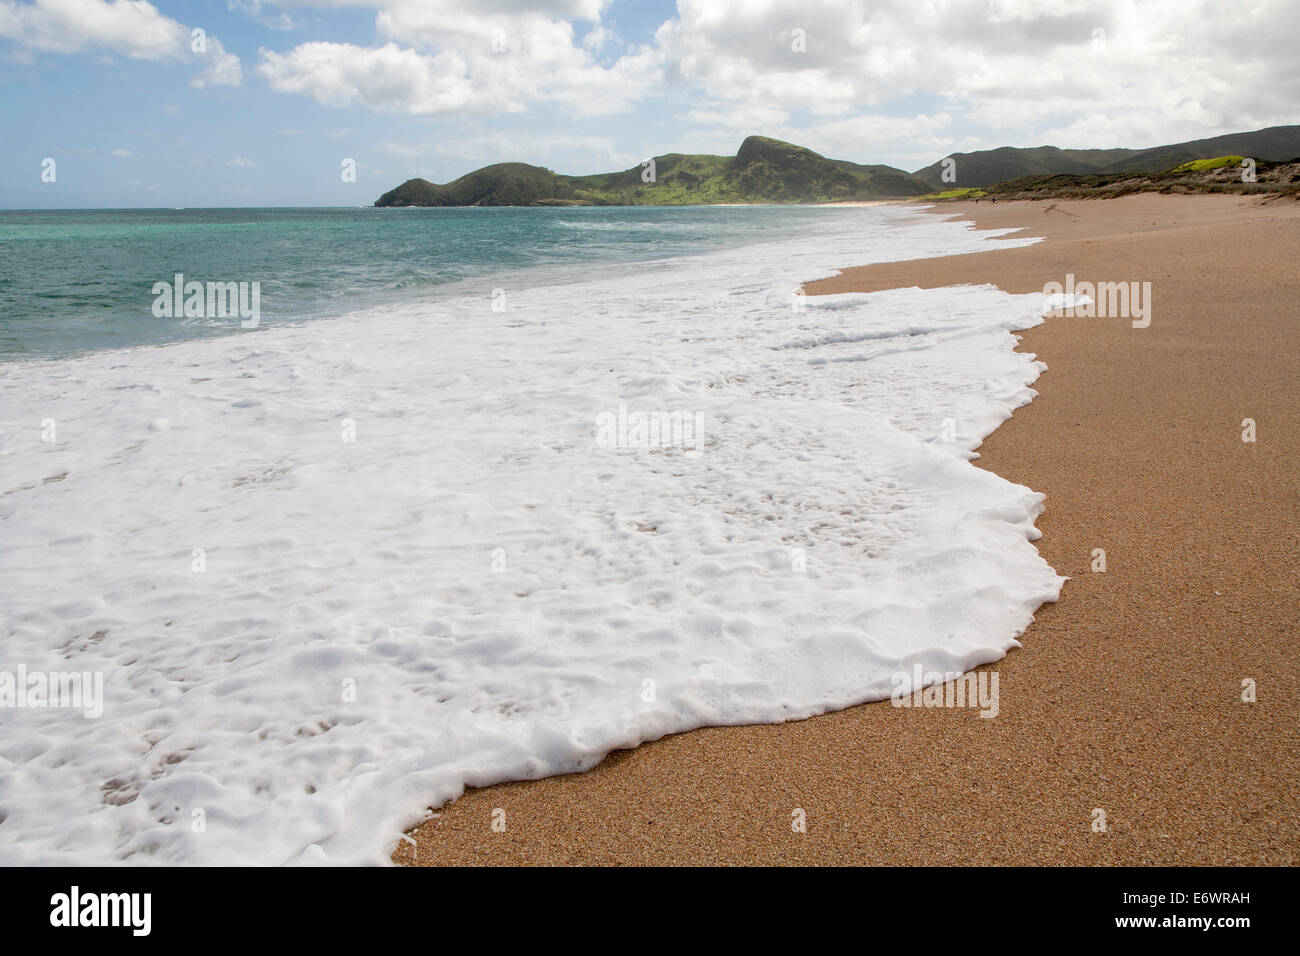 Spiaggia deserta con sabbia dorata, costa nord, nord Isola, Nuova Zelanda Foto Stock